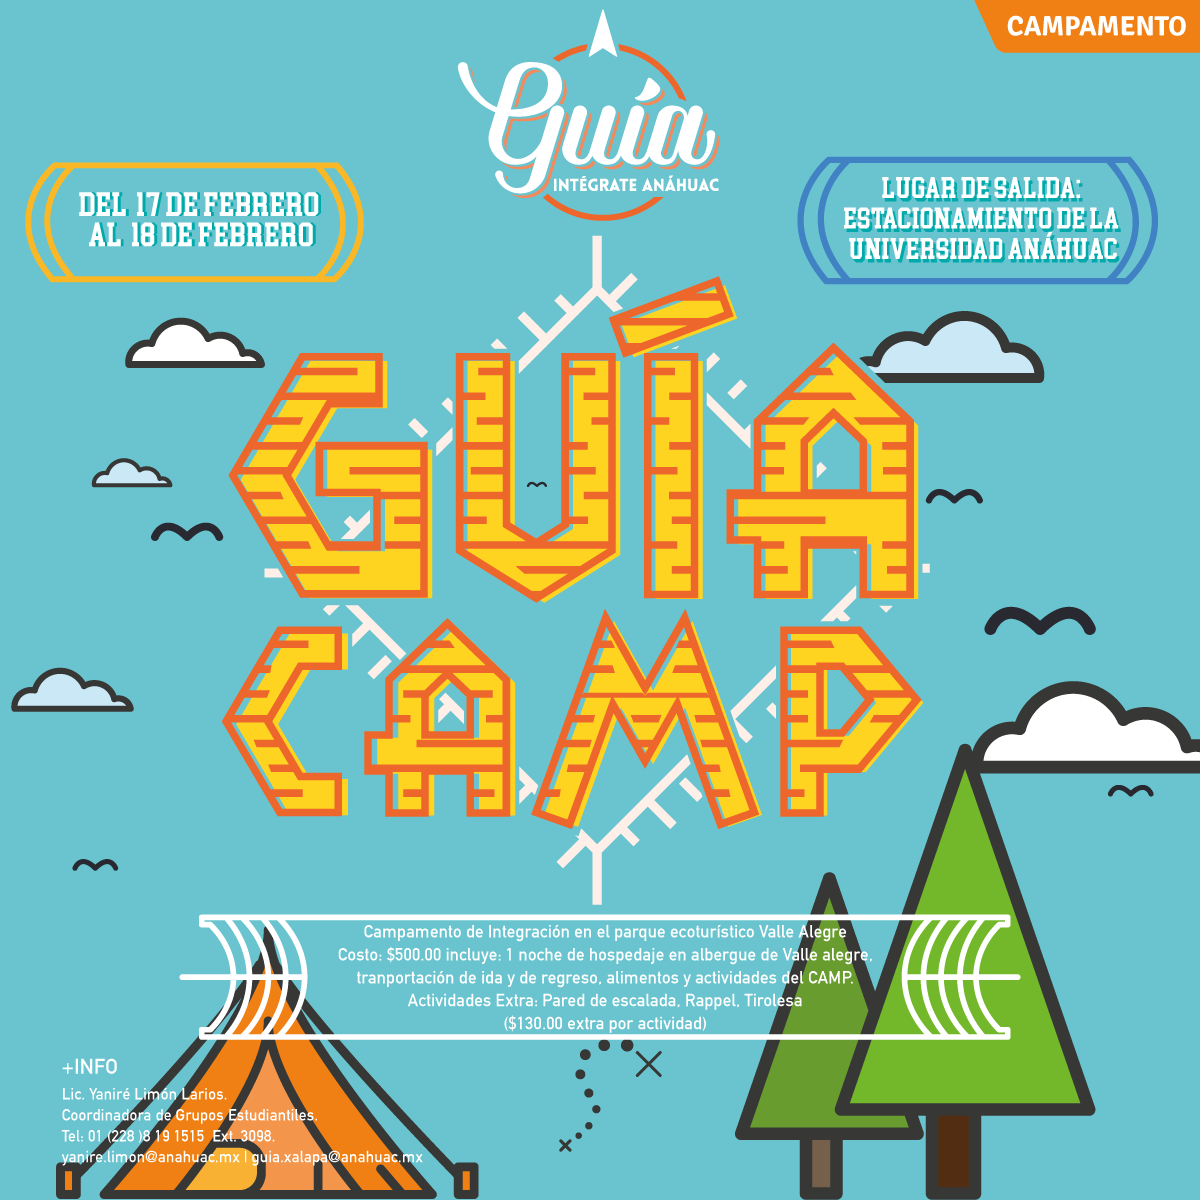 Guía Camp - Campamento de Integración